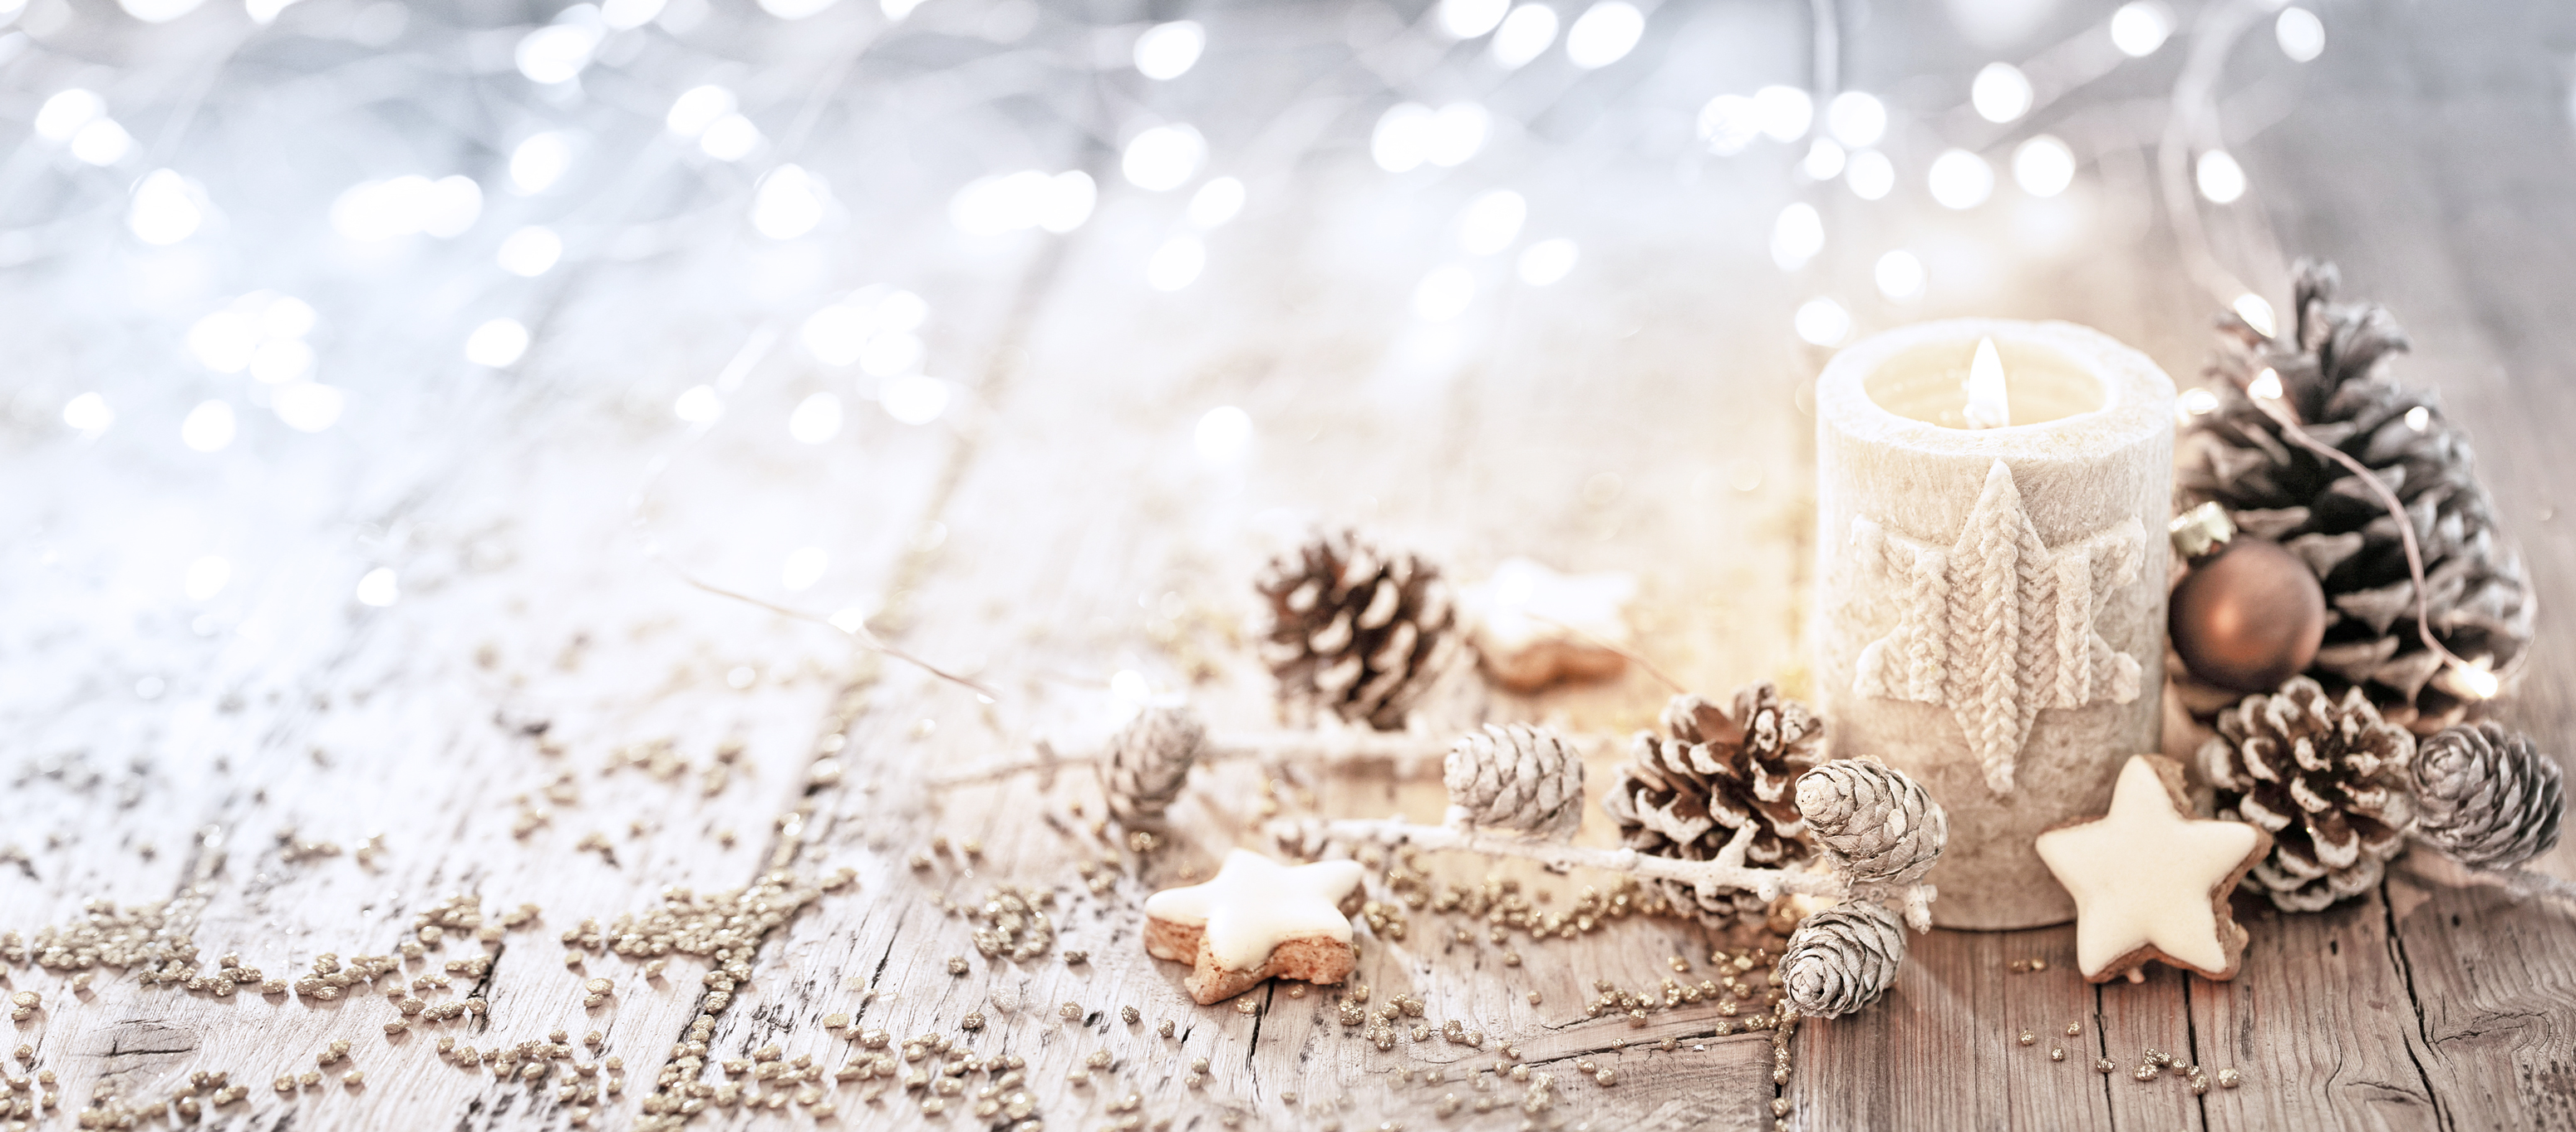 Kerze, Tannenzapfen und Zimtsterne liegen weihnachtlich-dekorativ auf einem Holztisch